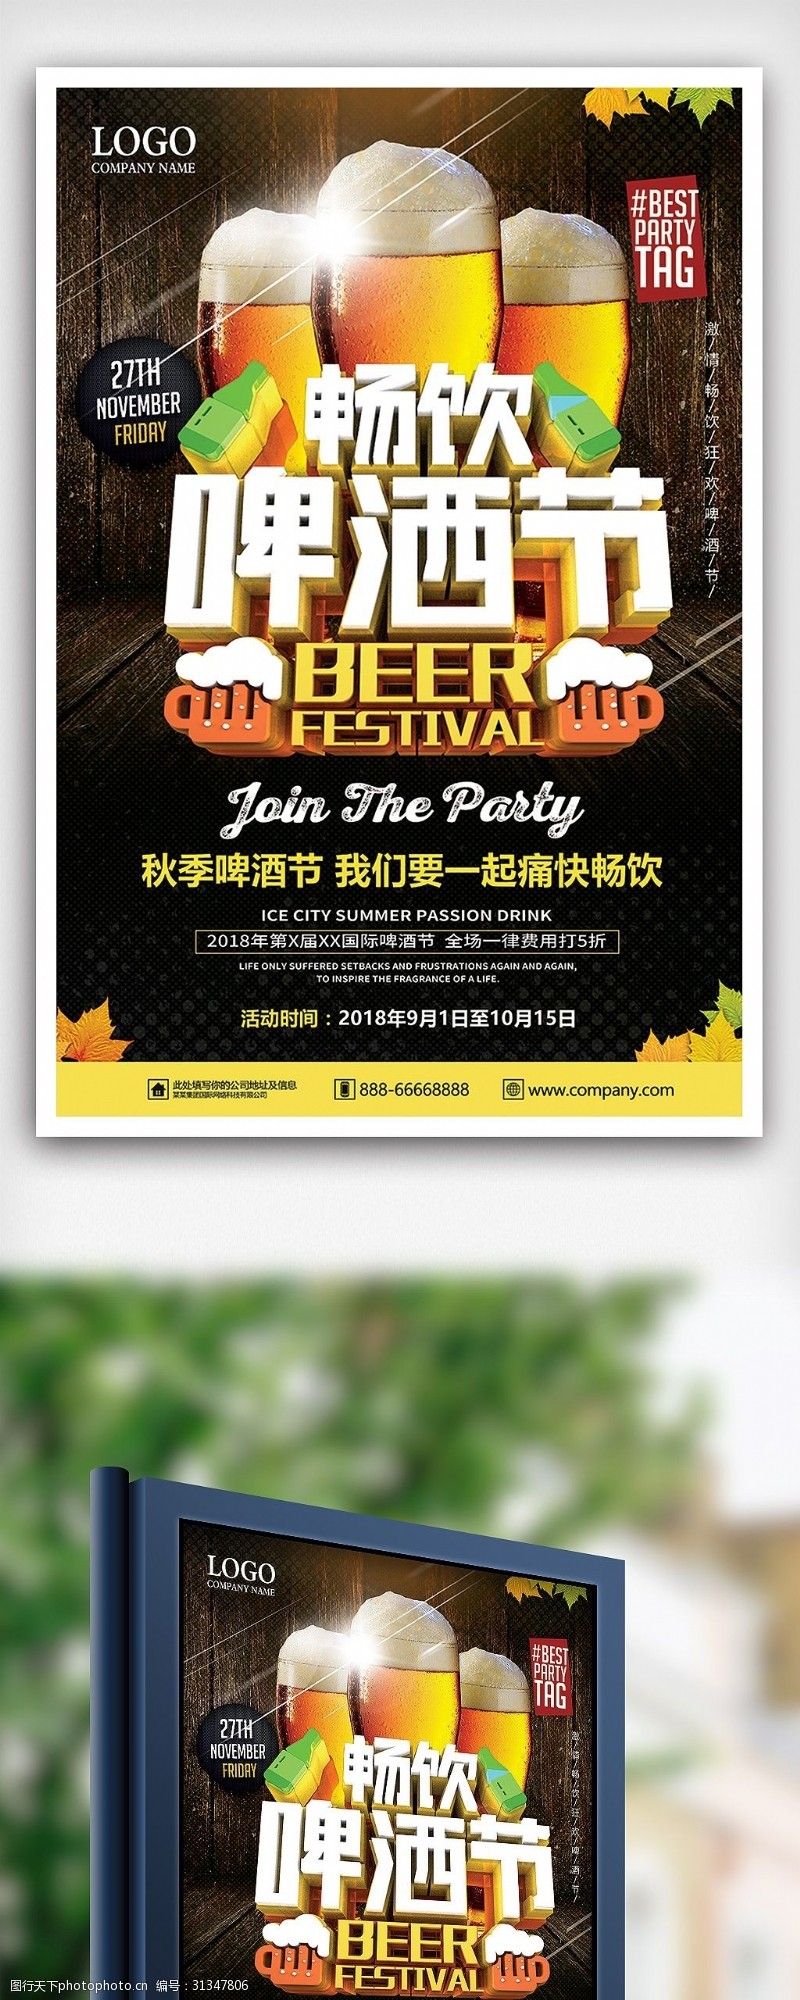 啤酒免费下载秋季畅饮啤酒节海报设计